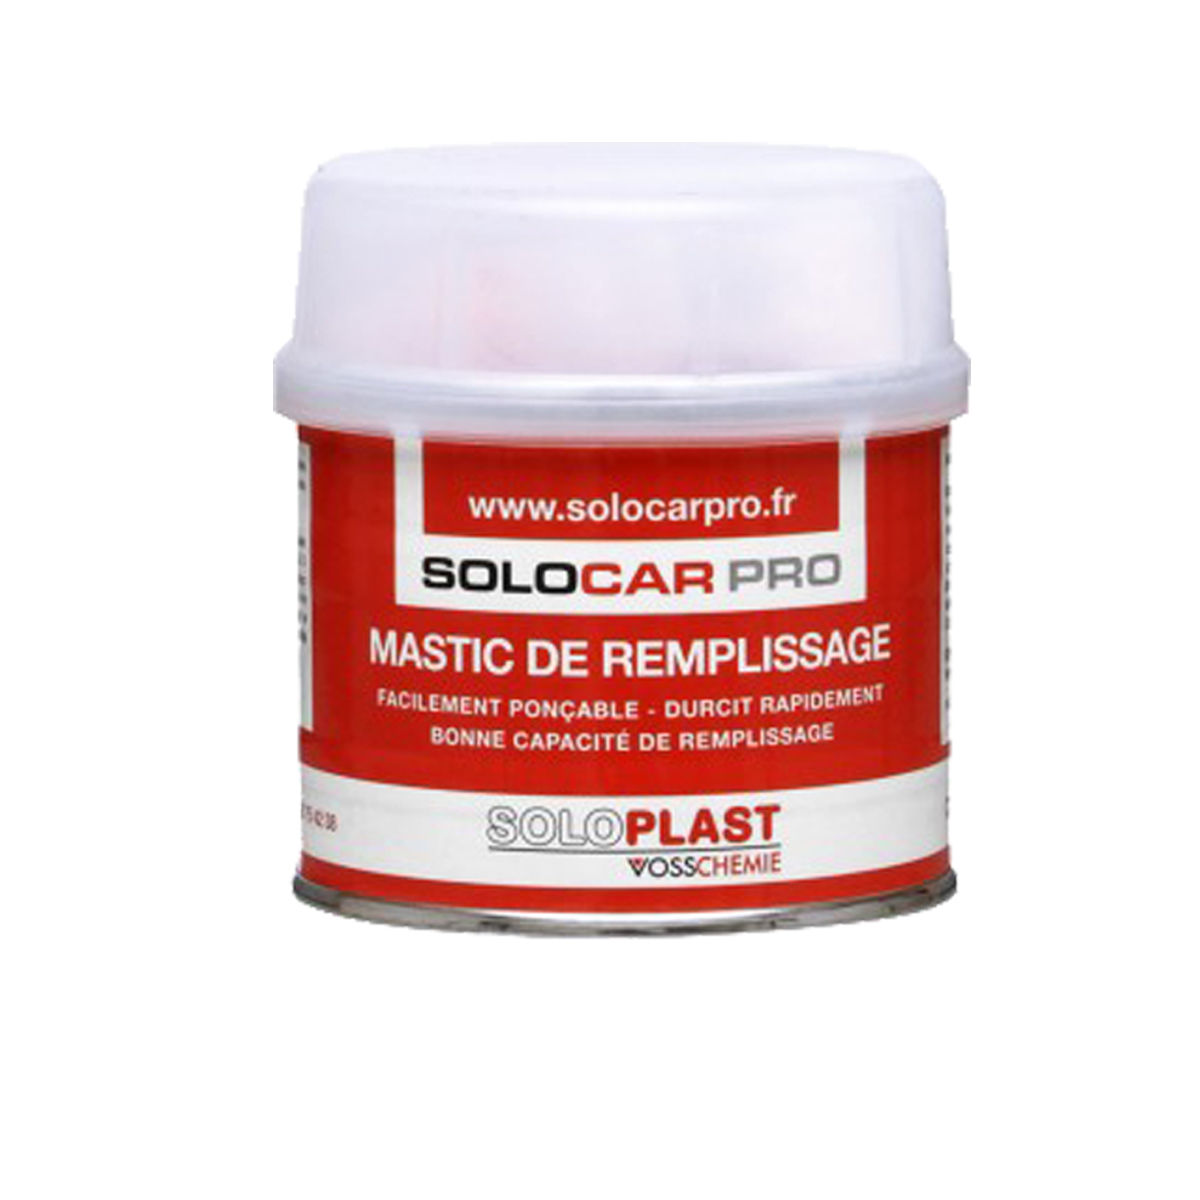 Mastic de remplissage Solocar Pro avec durcisseur 1kg - SOLOPLAST